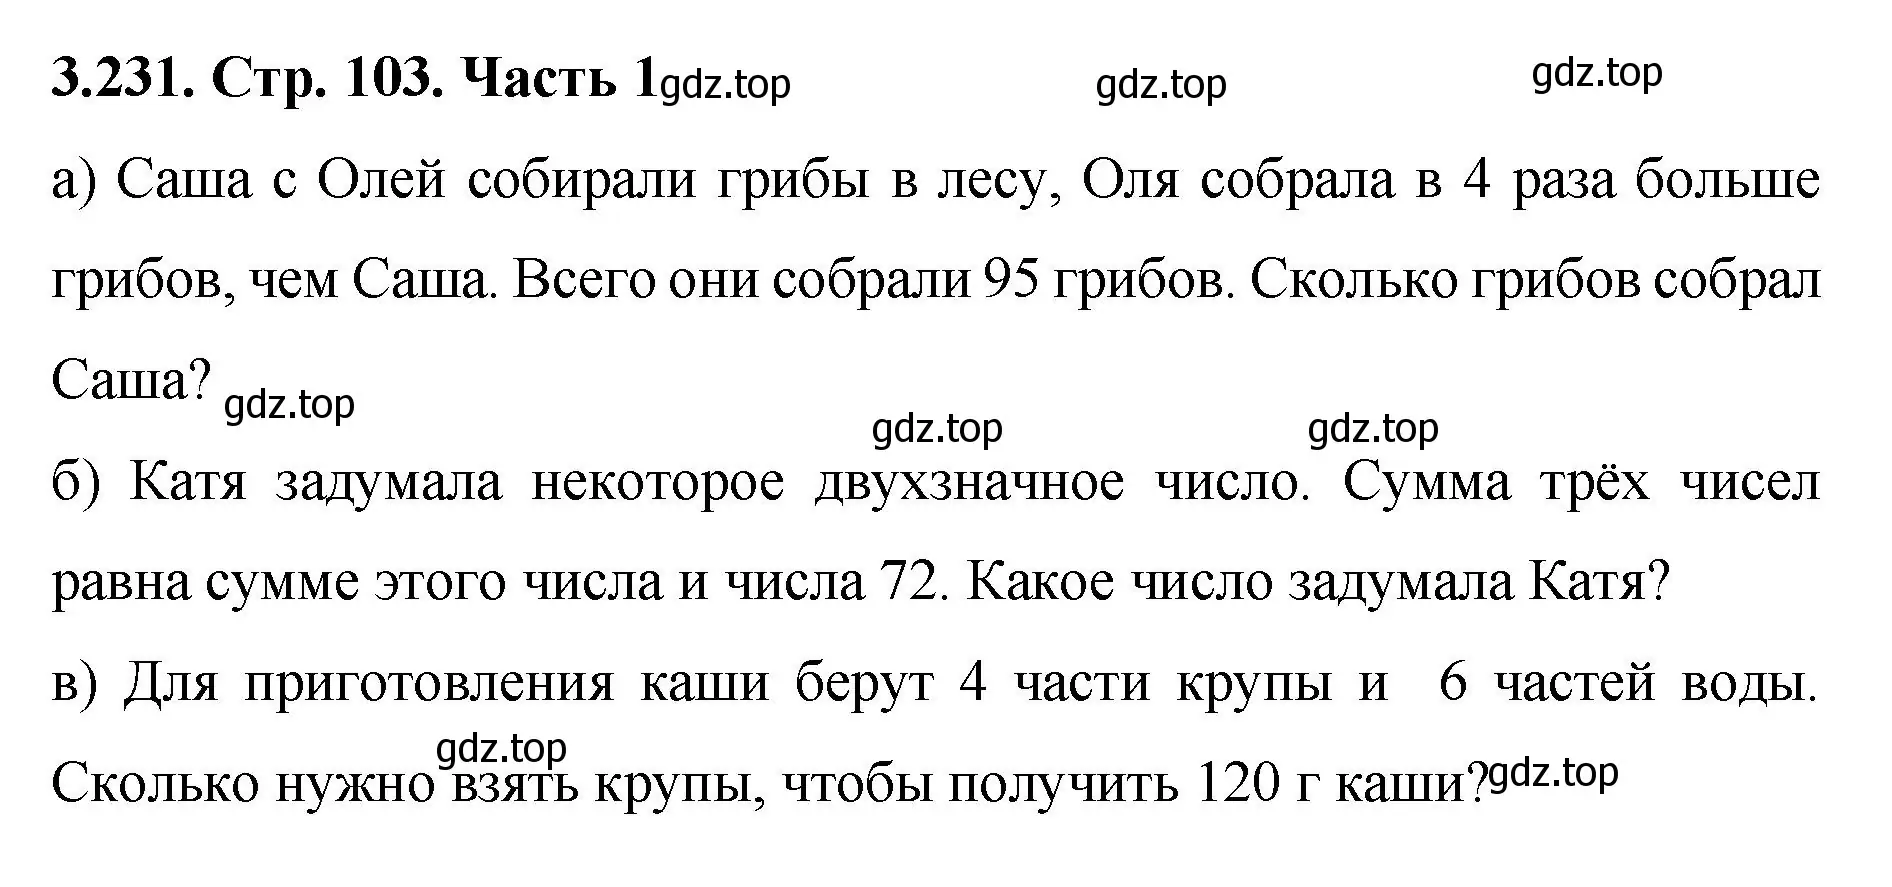 Решение номер 3.231 (страница 103) гдз по математике 5 класс Виленкин, Жохов, учебник 1 часть